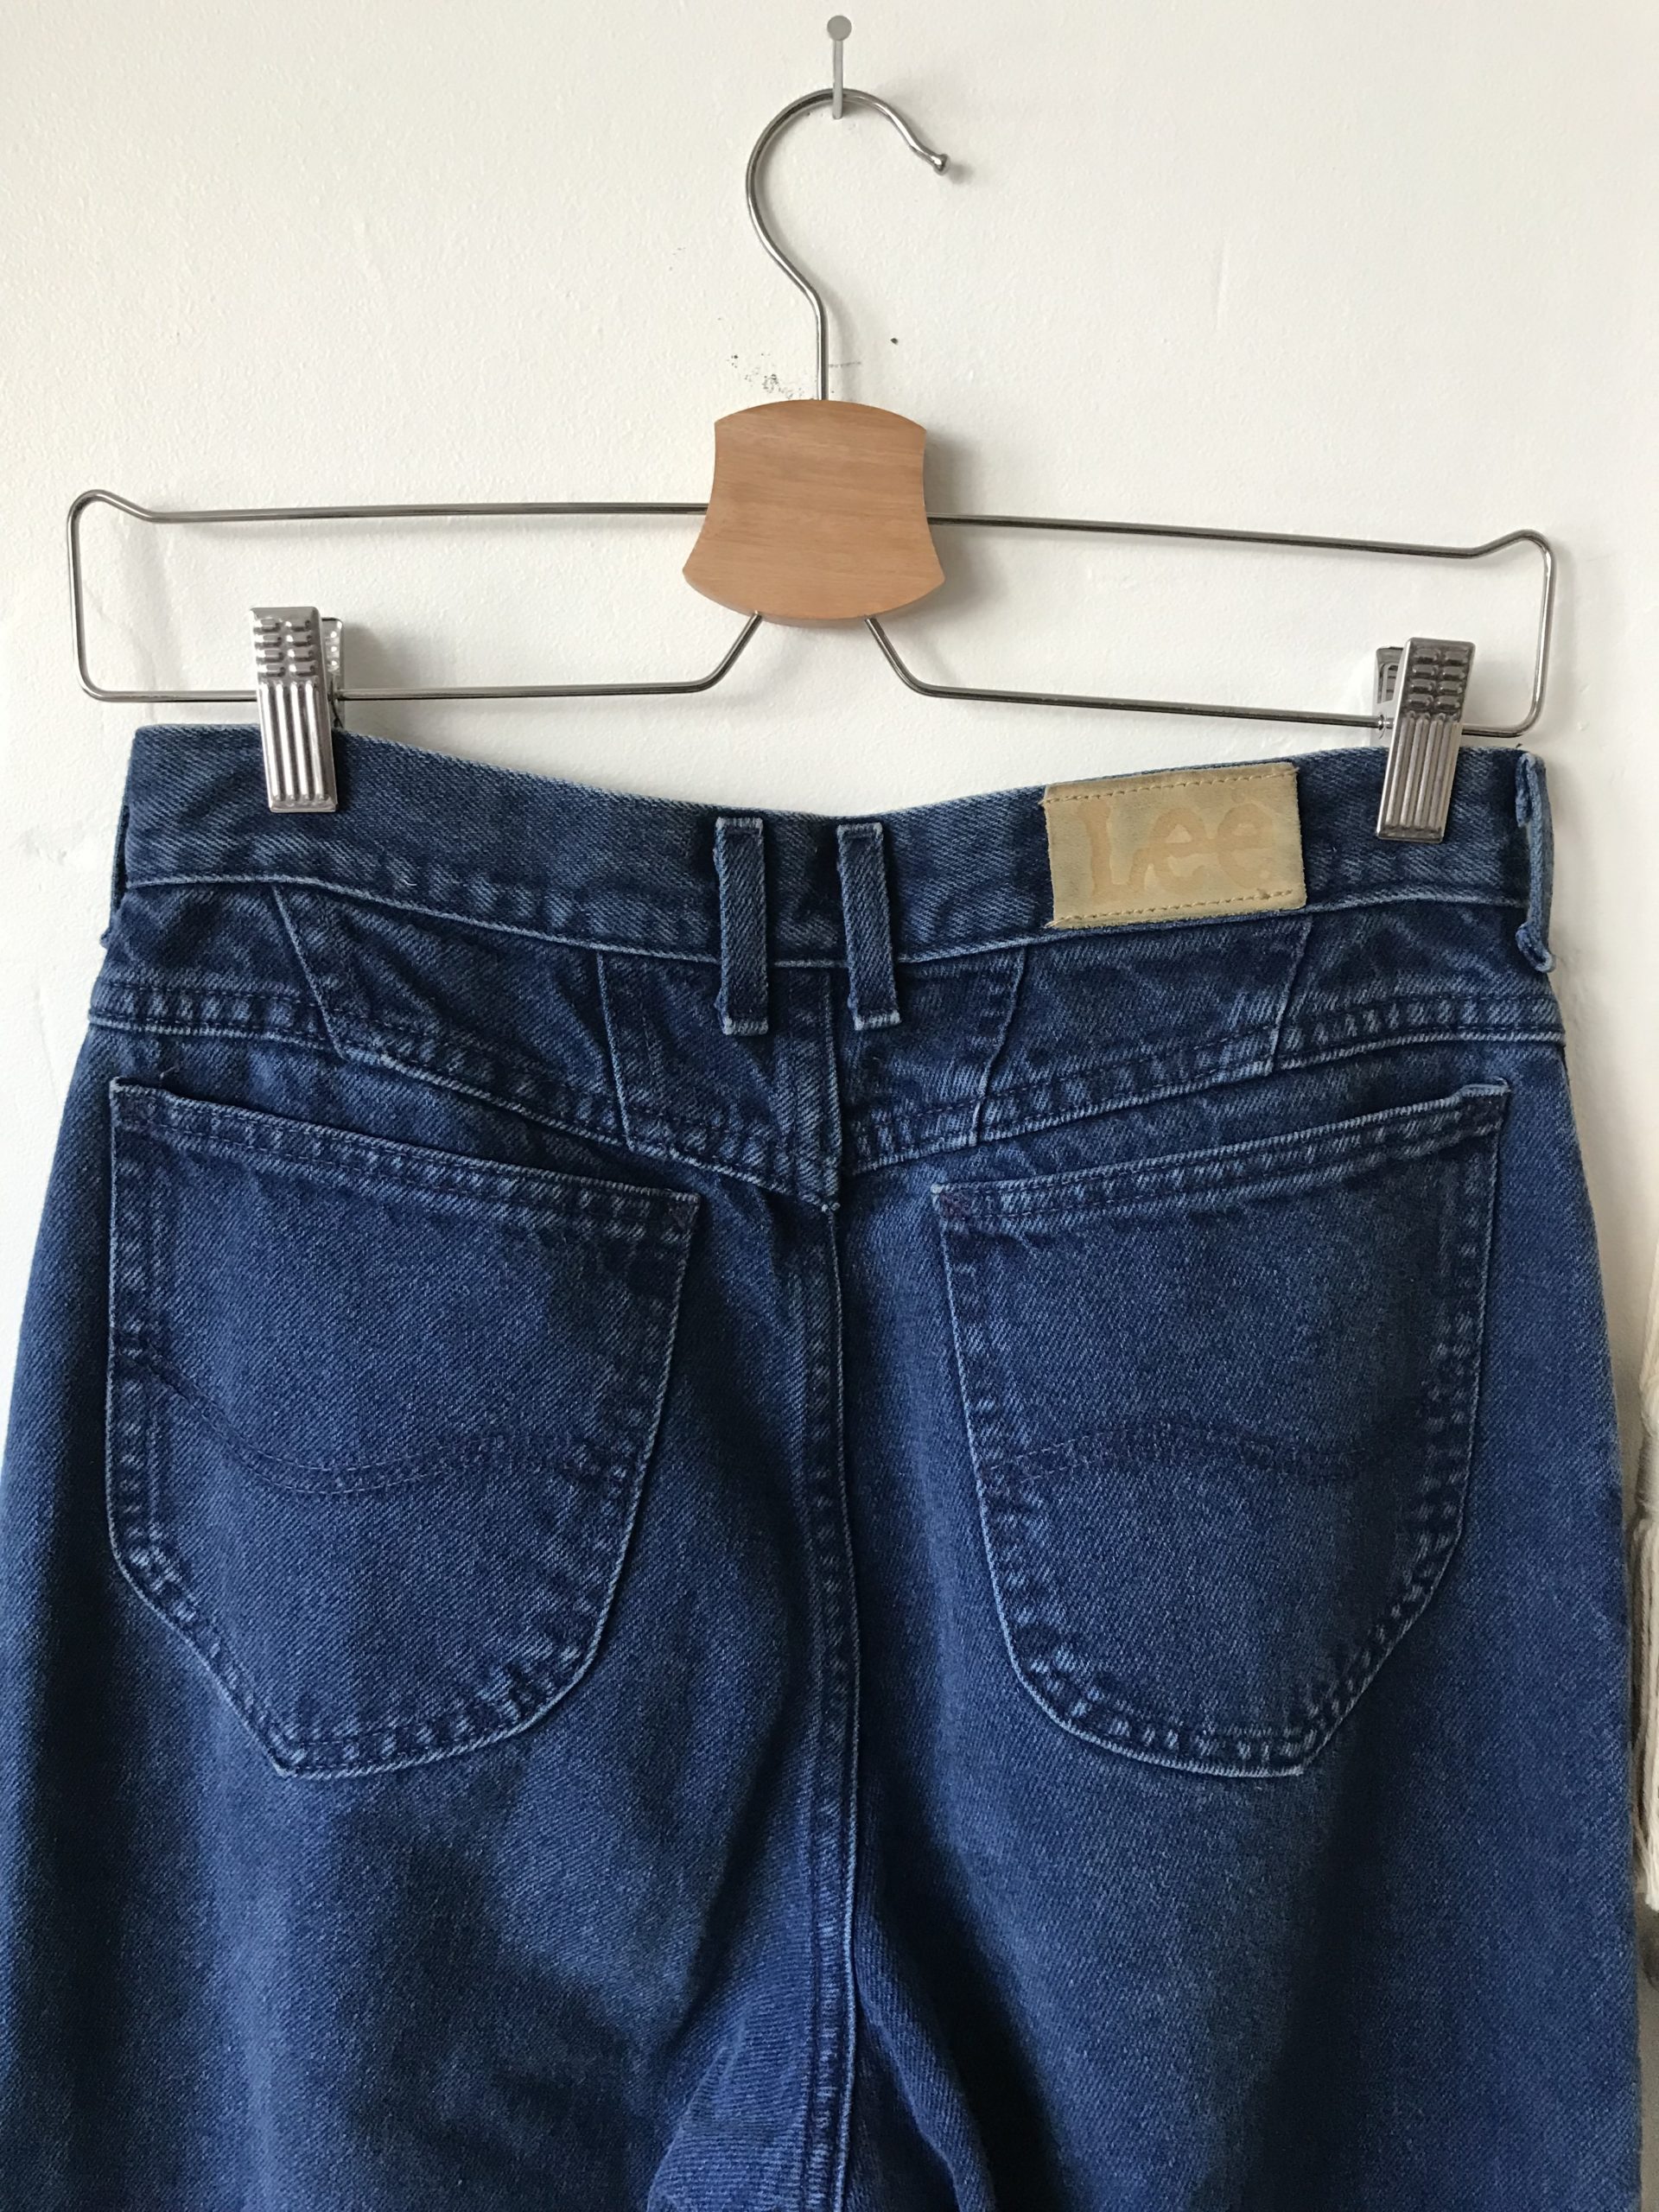 1980s/90s LEE Jeans sz M / 29